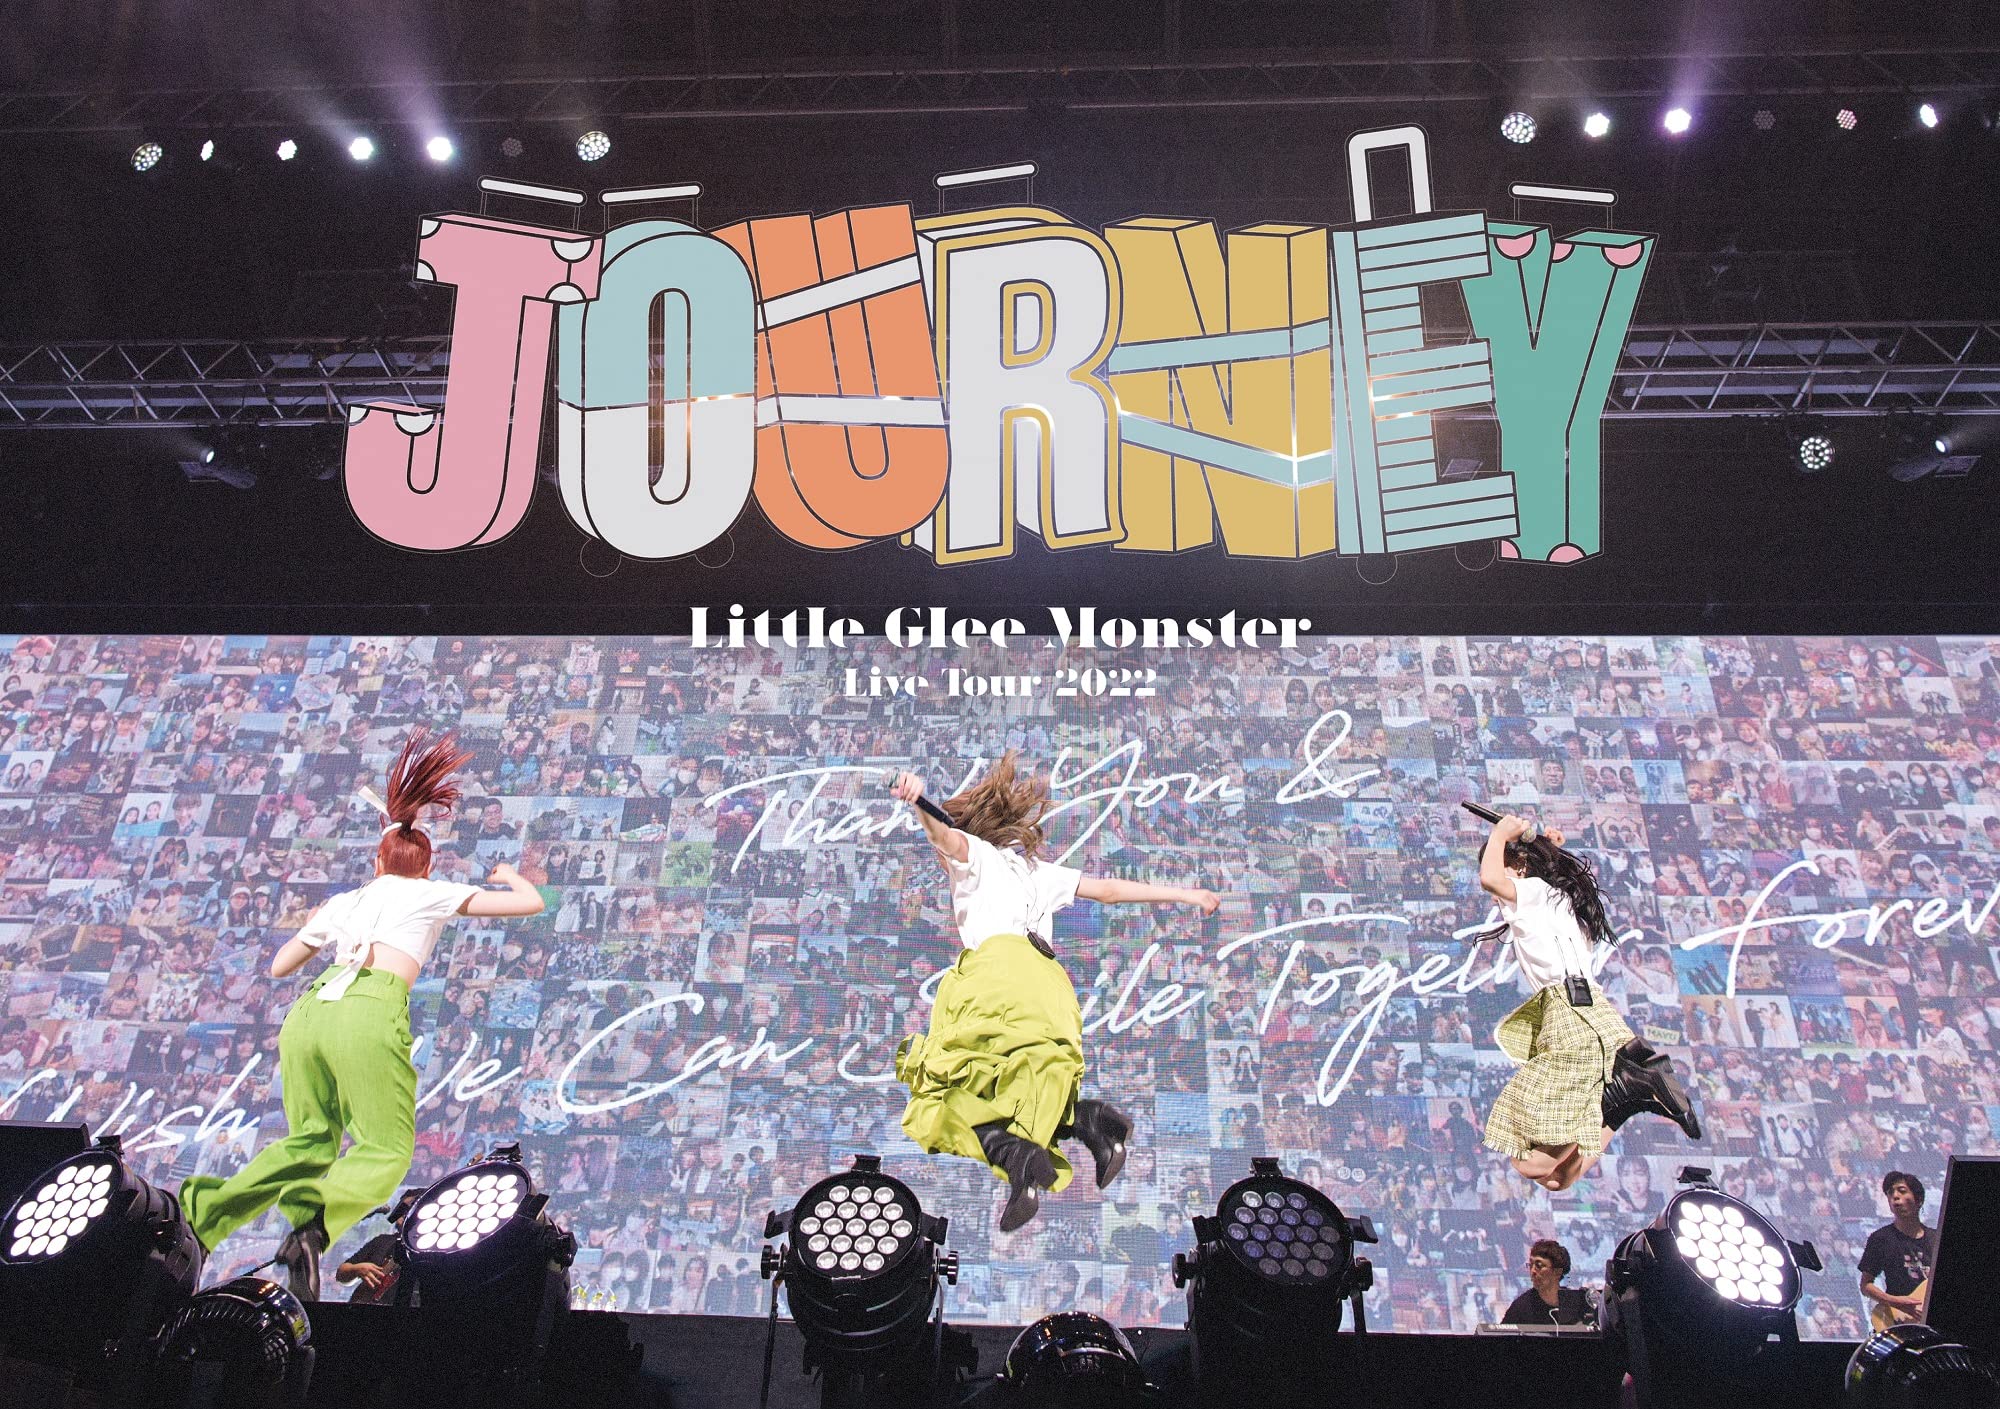 Little Glee Monster Live Tour 2022 Journey (通常盤) (DVD) (特典なし)